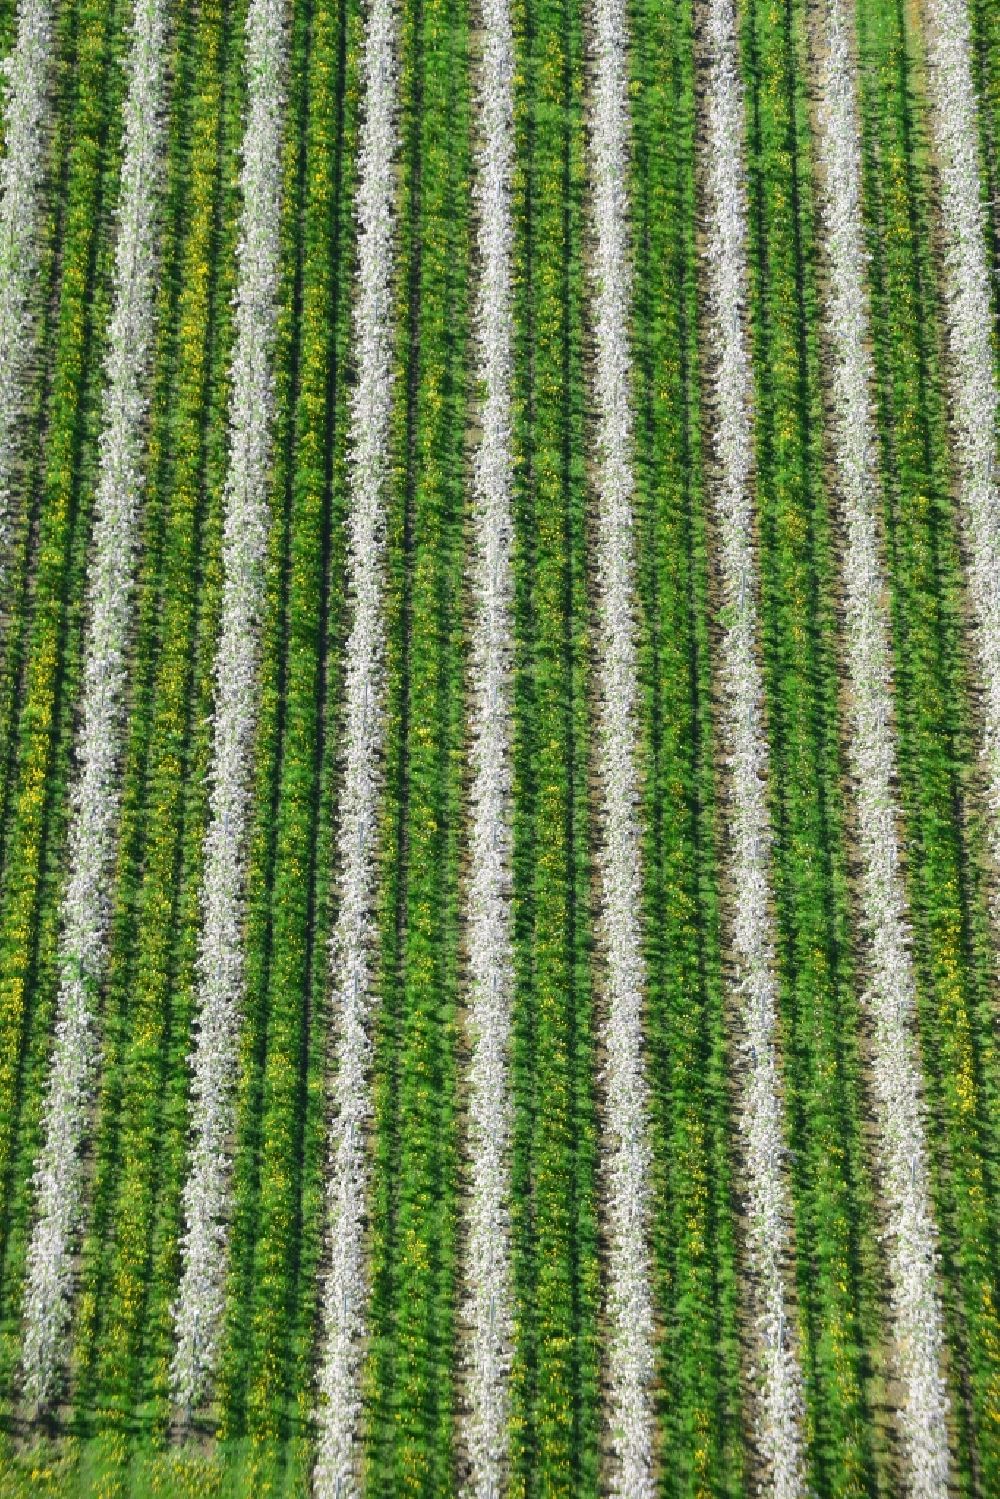 Luftbild Hirschfelde - Strukturen von Obst- Baumreihen auf landwirtschaftlichen Feldern in Hirschfelde im Bundesland Brandenburg